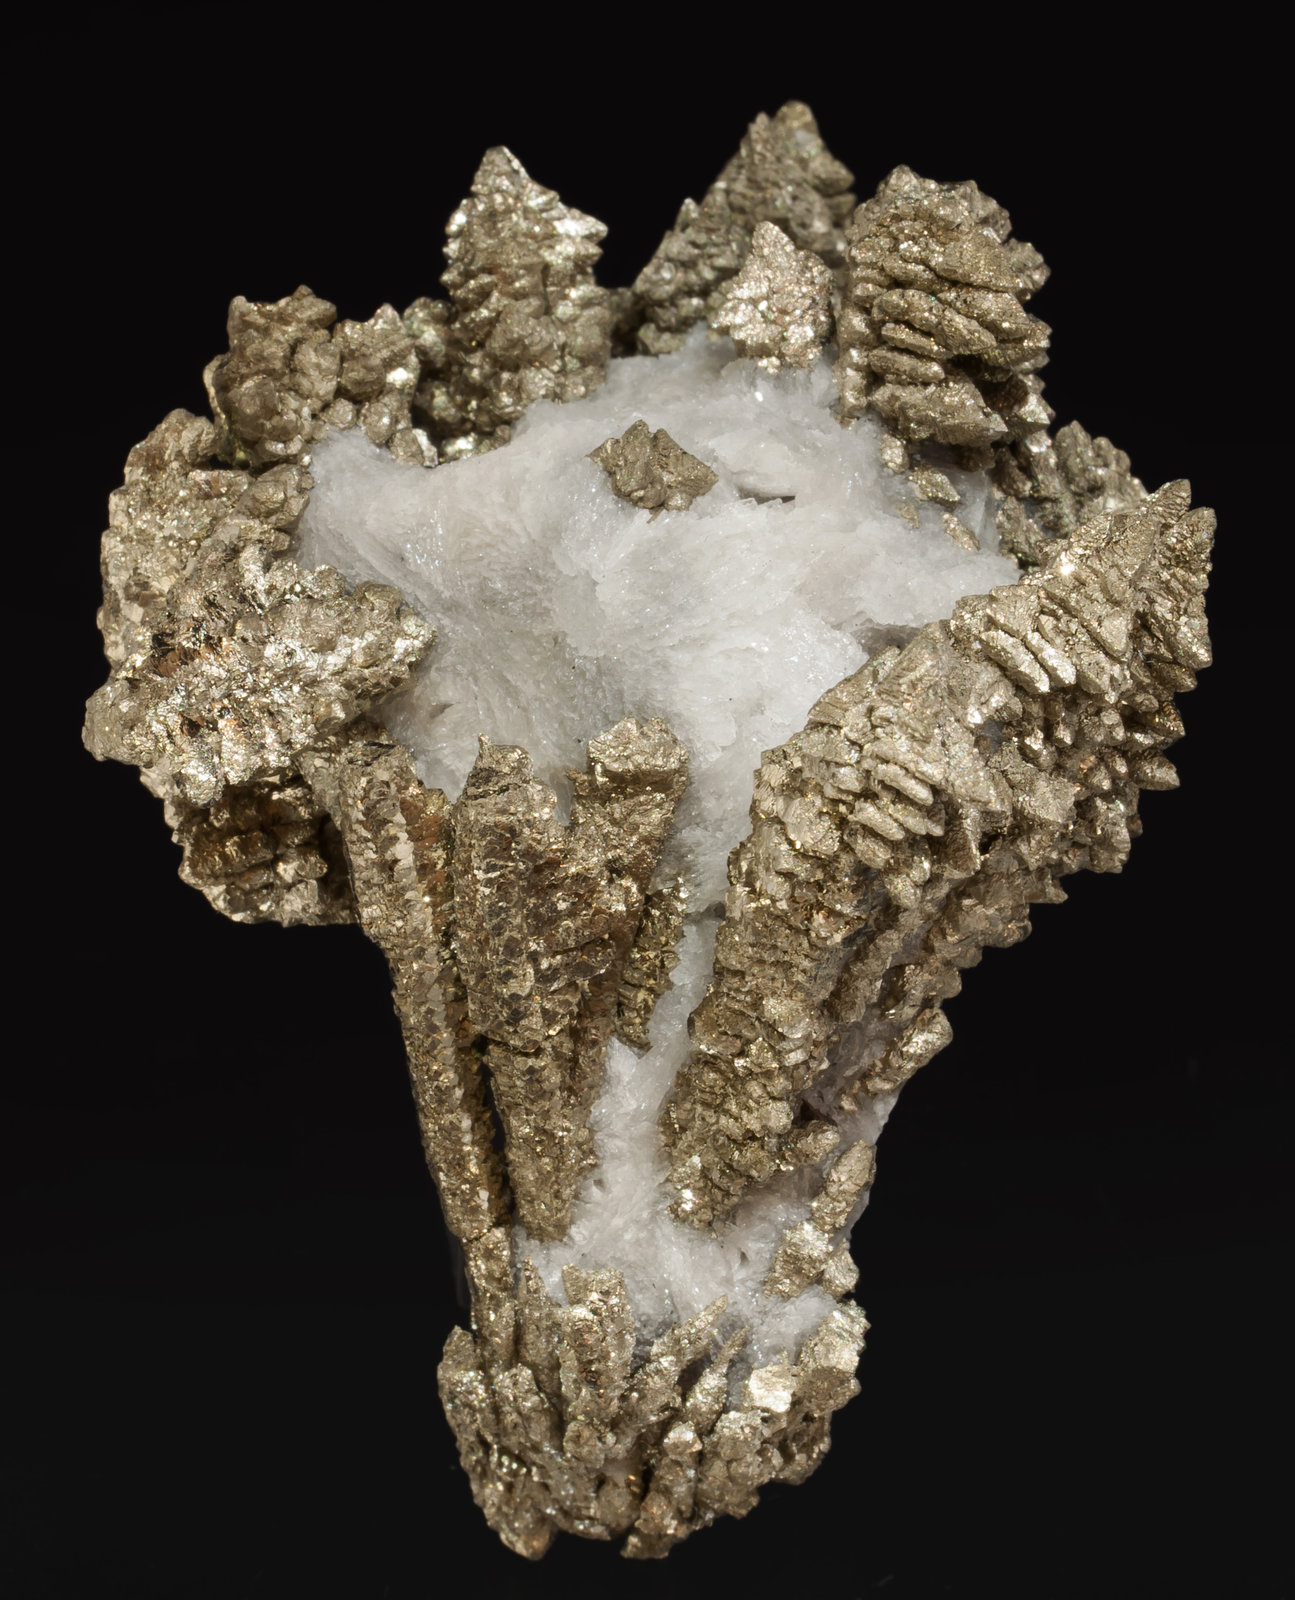 specimens/s_imagesAF4/Pyrite-EA27AF4f.jpg